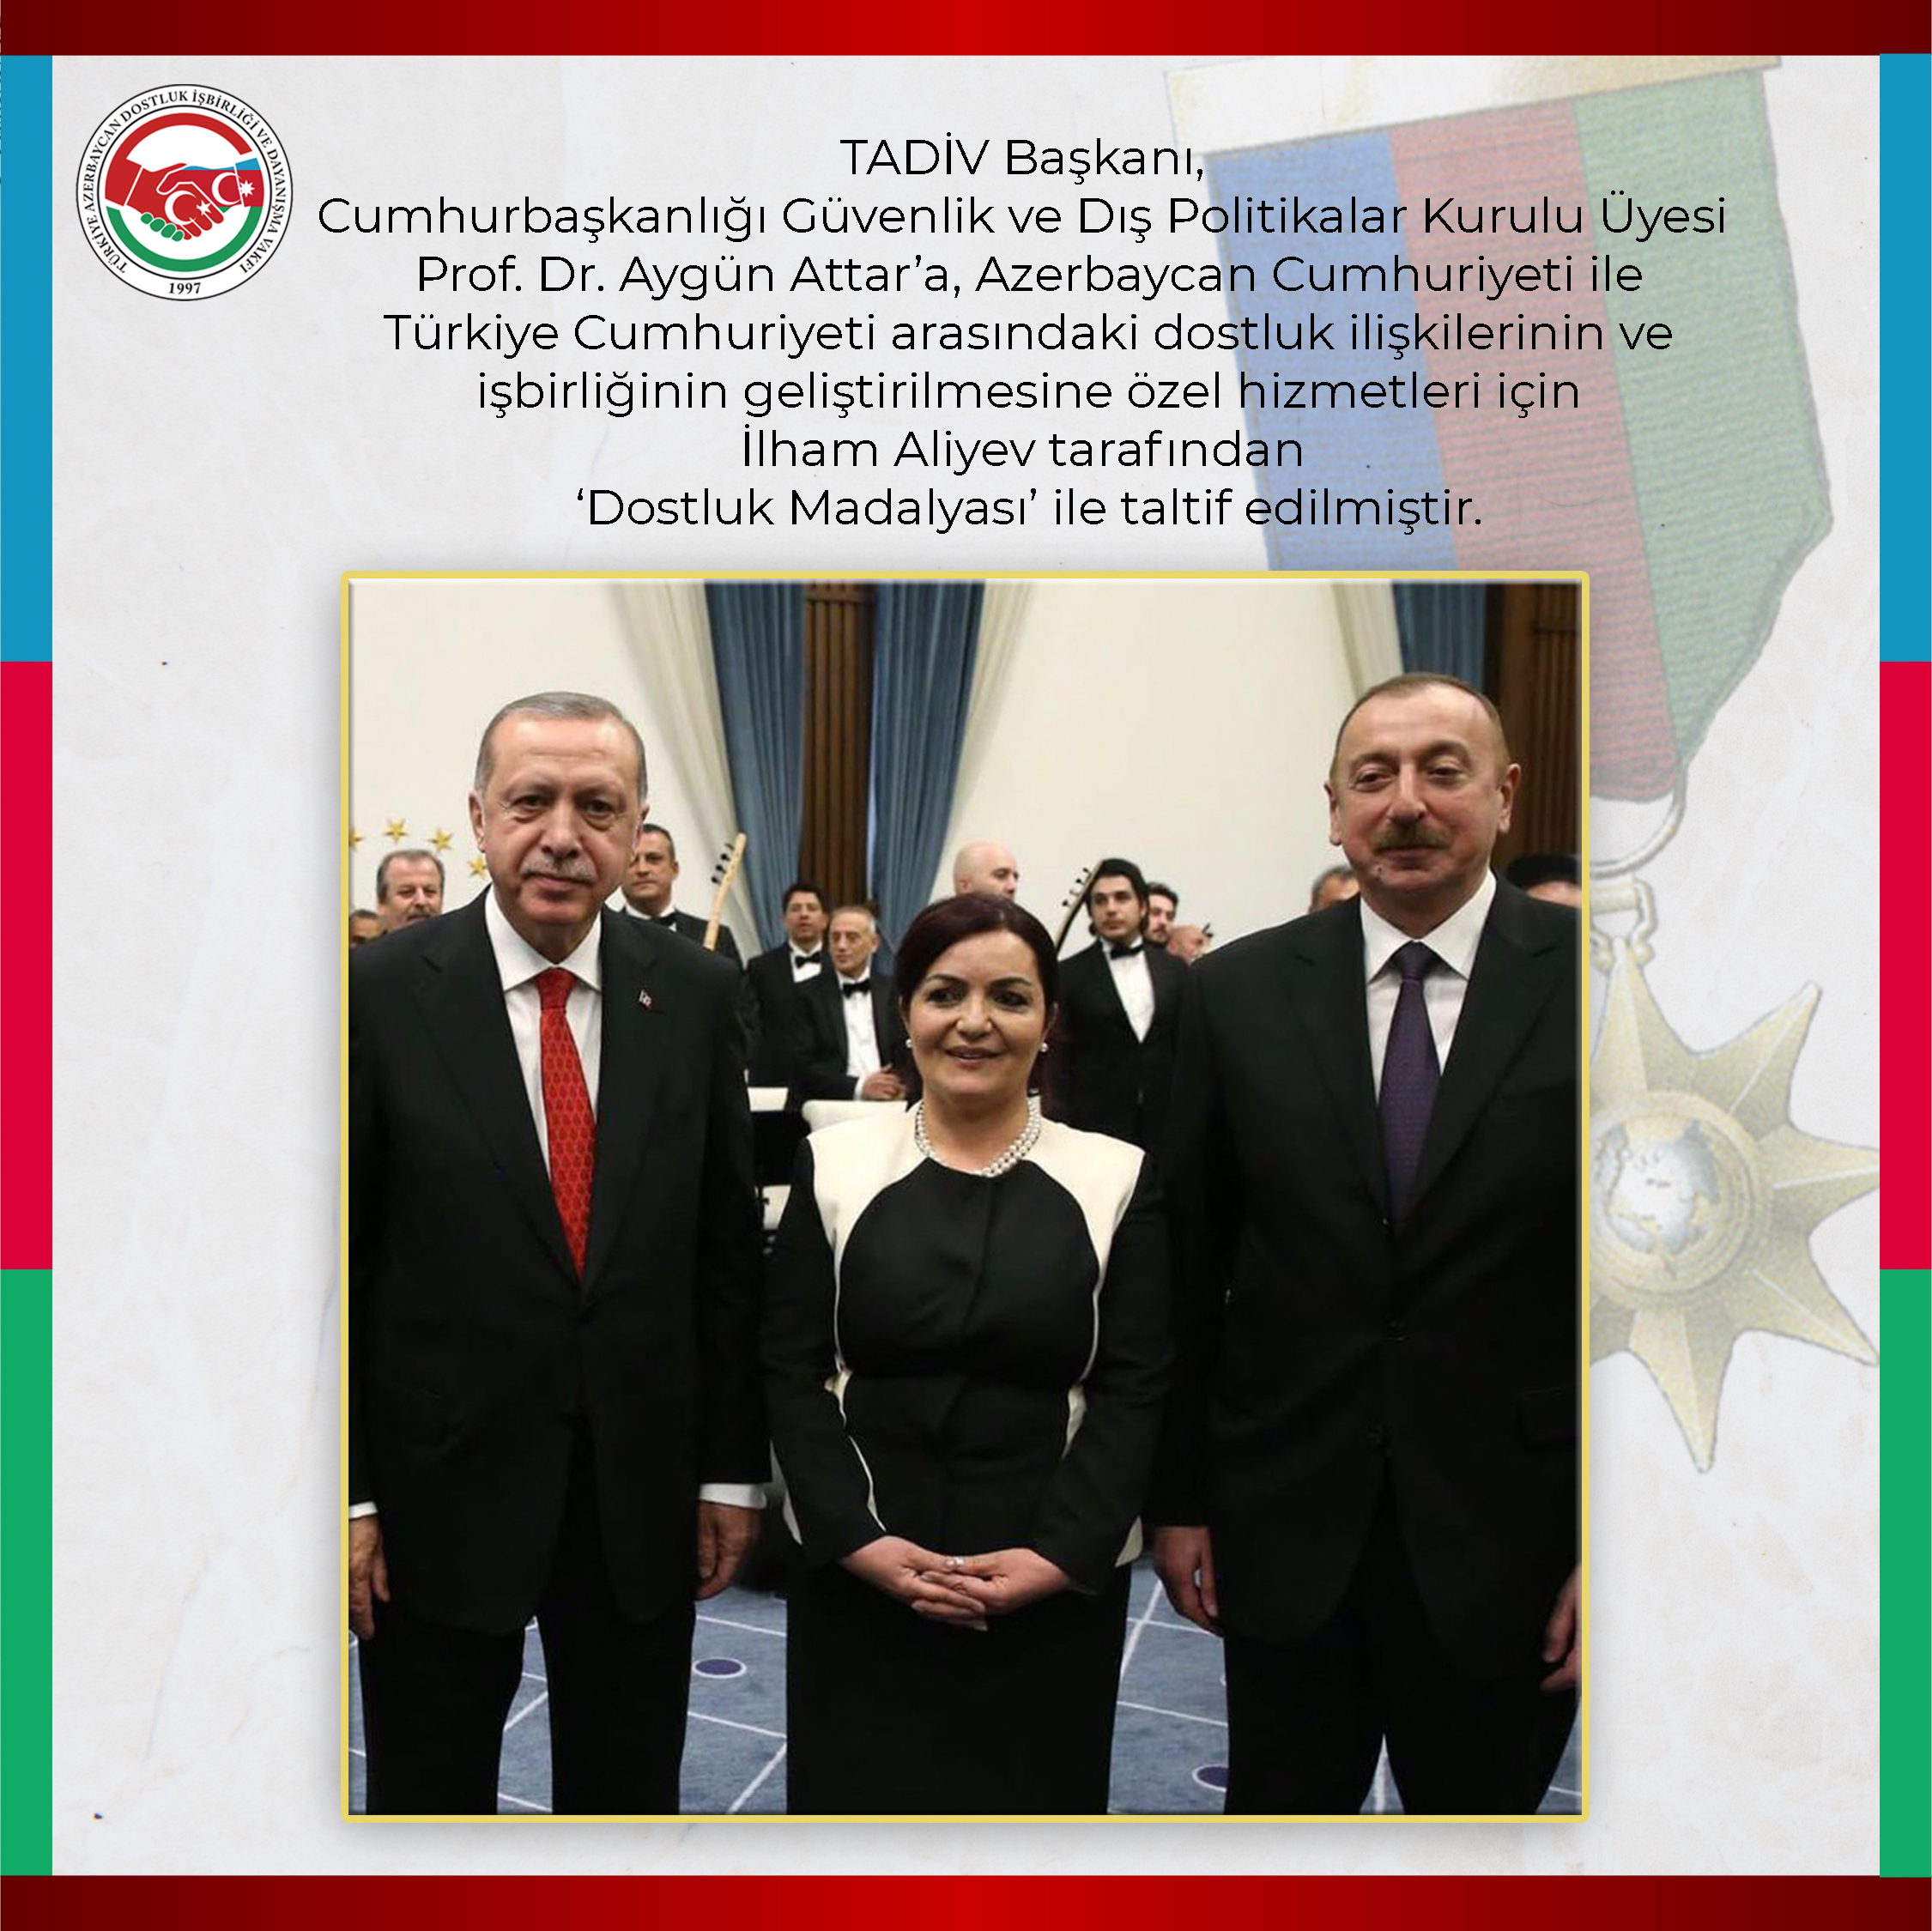  İlham Aliyev tarafından Prof. Dr. Aygün Attar’a ‘Dostluk Madalyası’